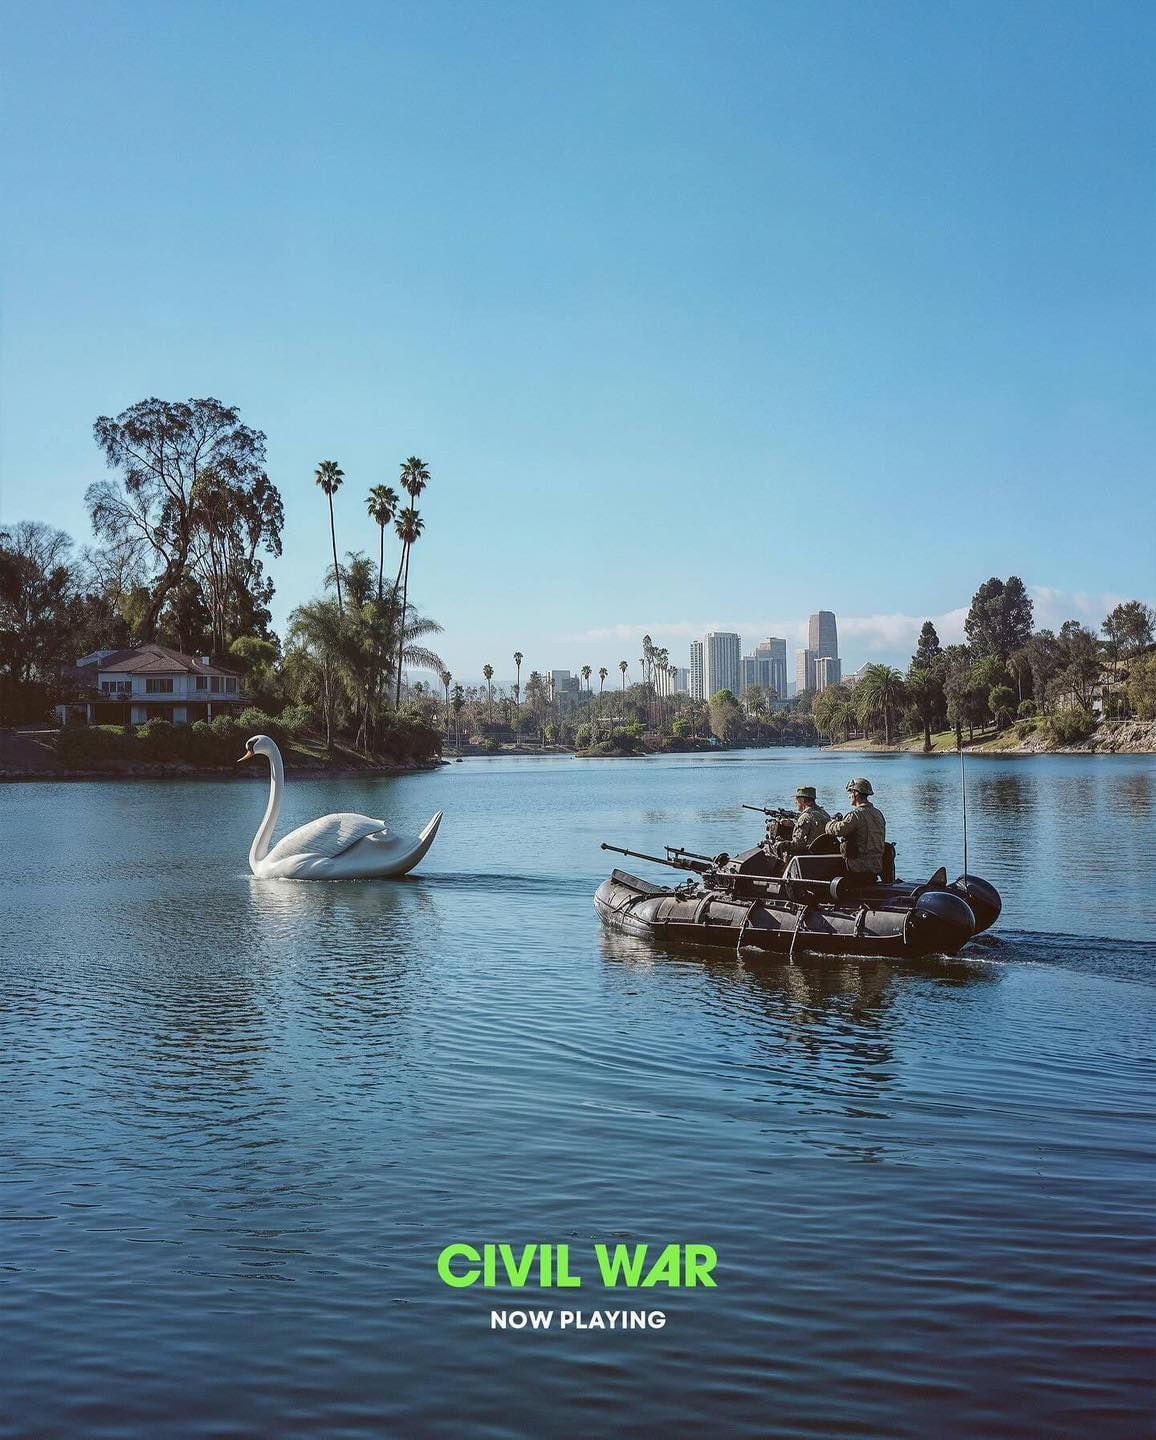 Pósters de la película de "Civil War" de A24 fueron creados con IA